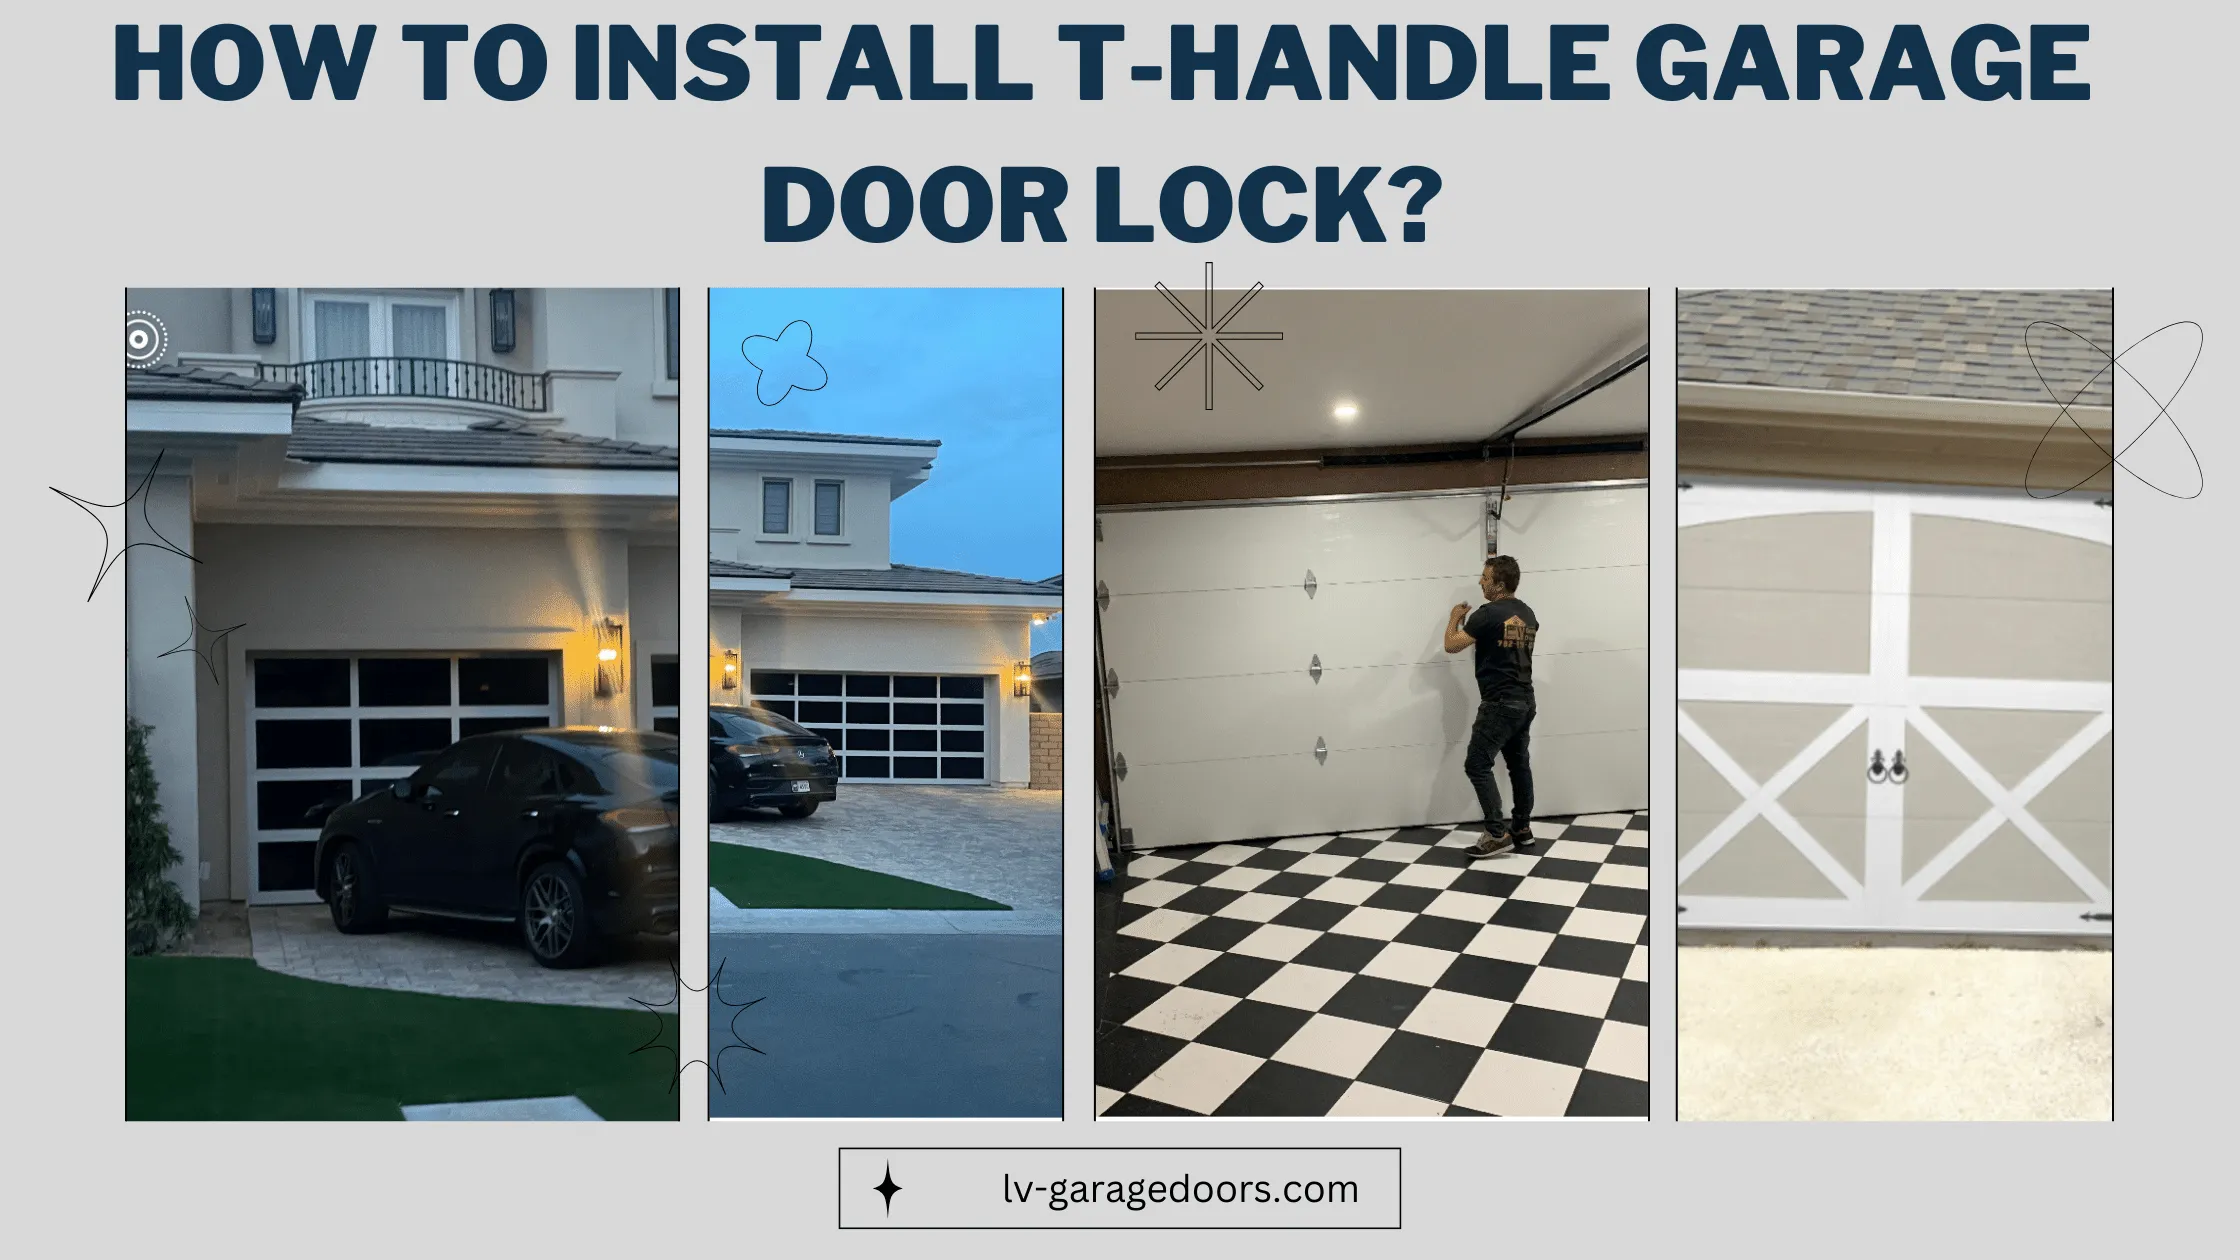 How To Install T-handle Garage Door Lock